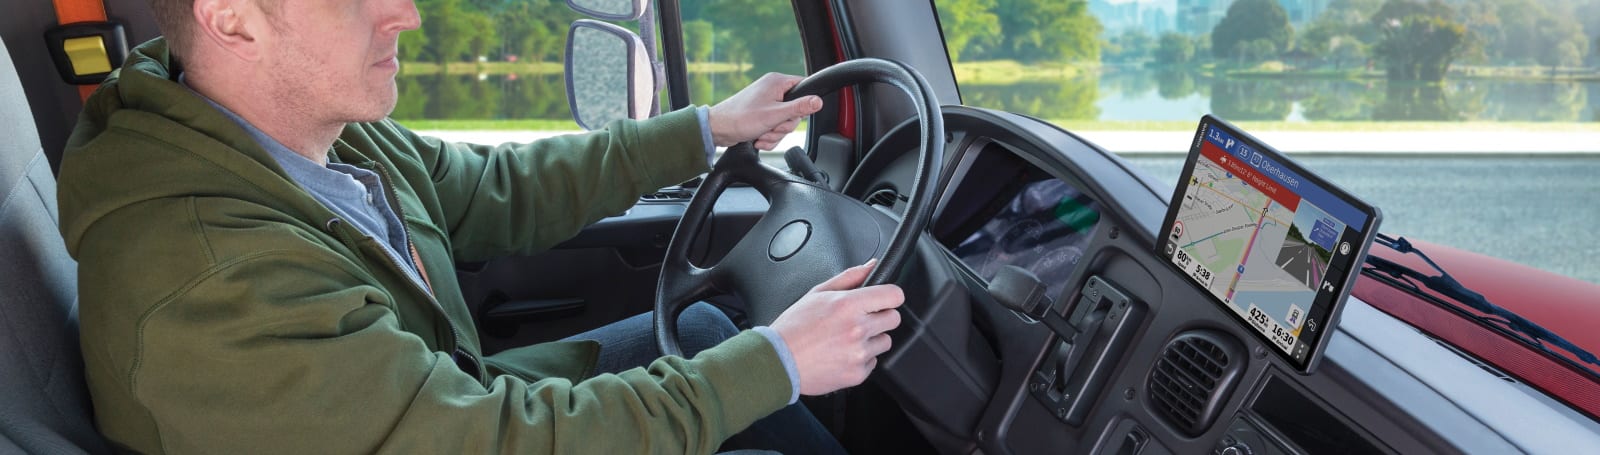 Garmin dezl LGV500 sunkvežimių navigacija